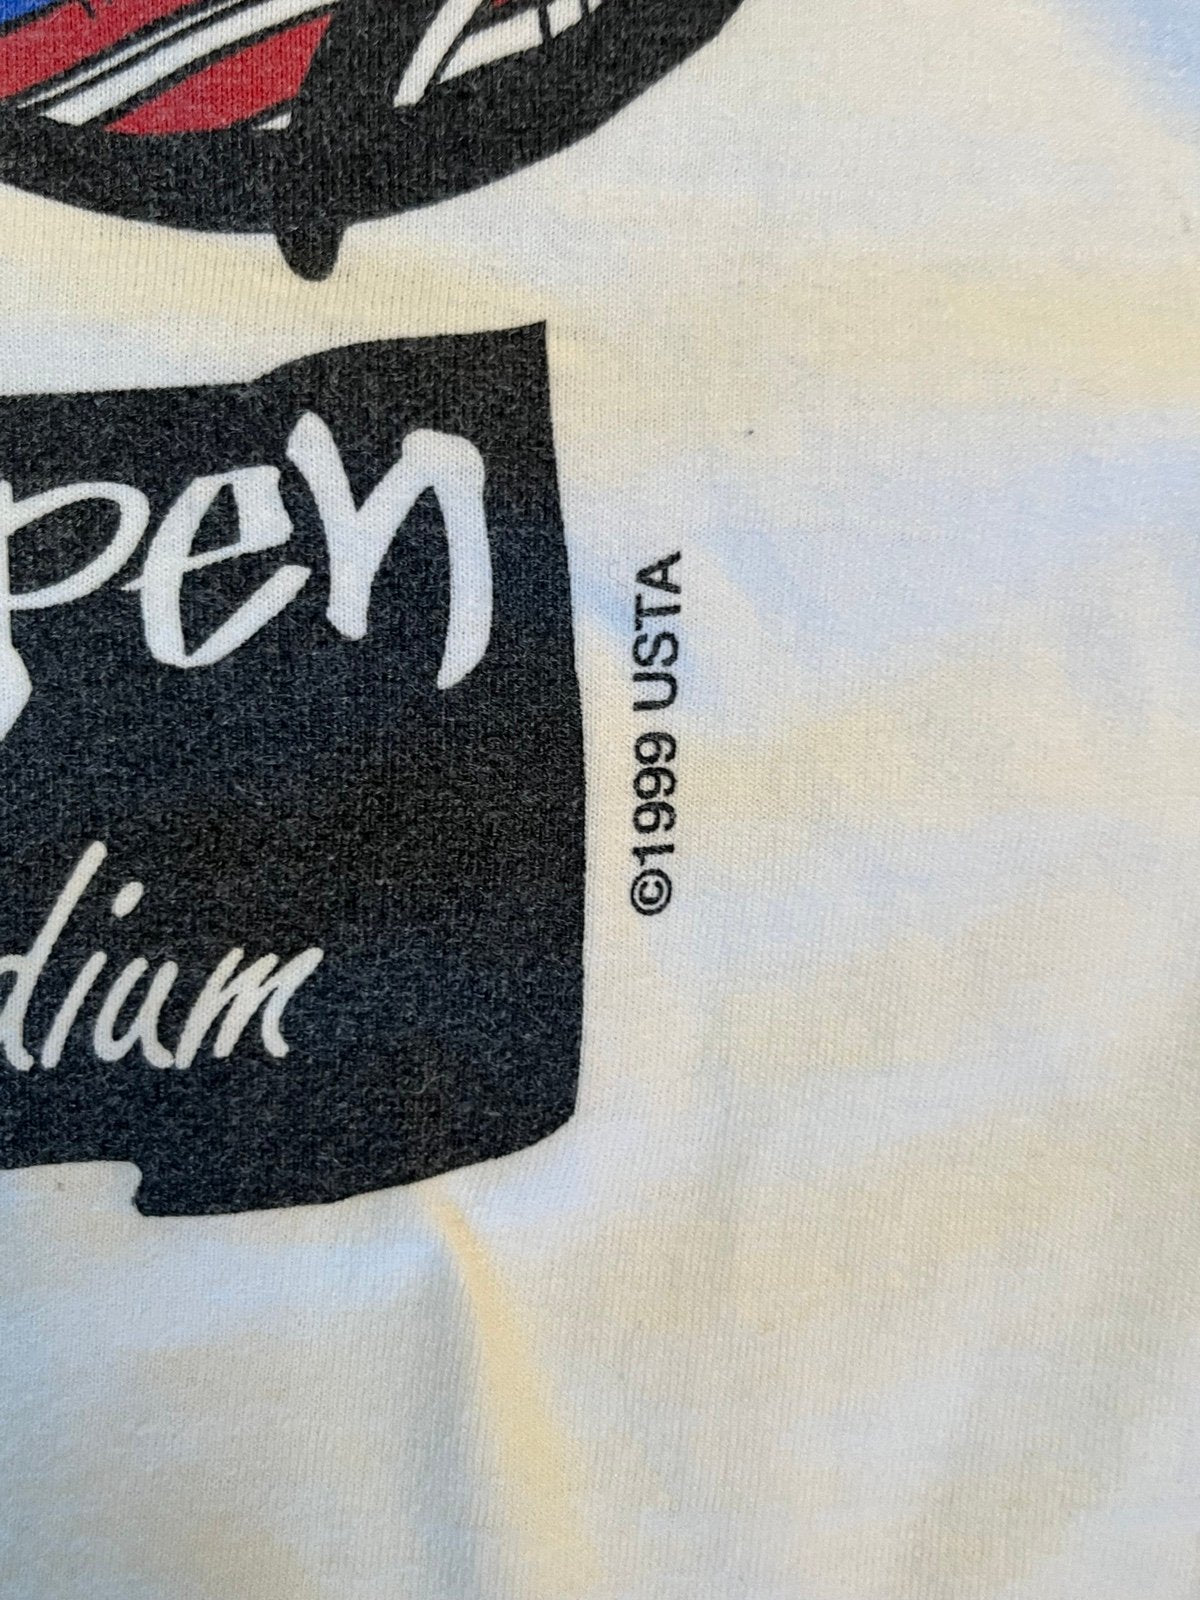 Vintage 90s US Open Tennis T Shirt